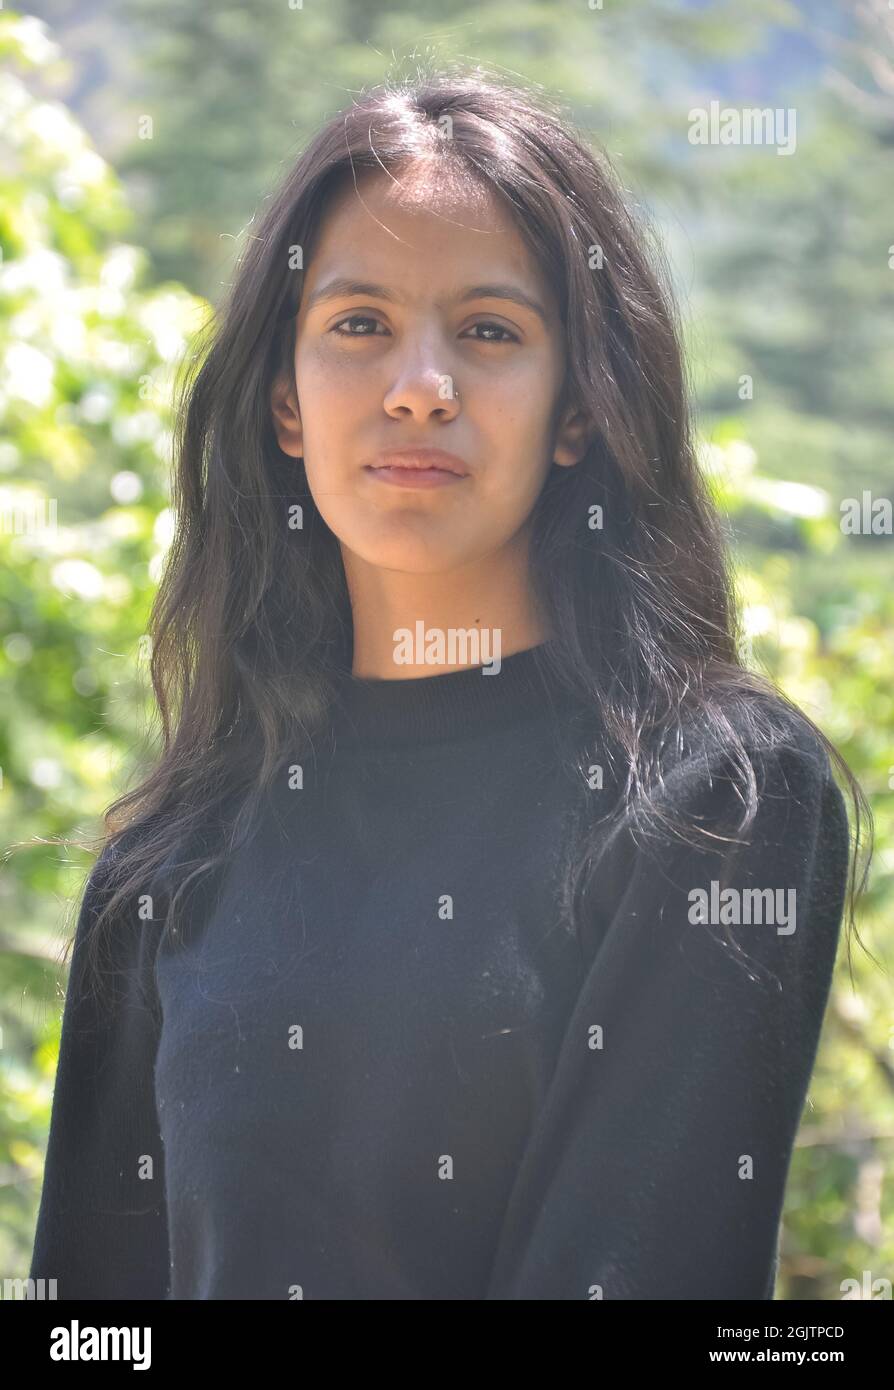 Primo piano di una bella ragazza indiana che indossa una felpa nera, posa all'aperto in natura con guardare la macchina fotografica Foto Stock